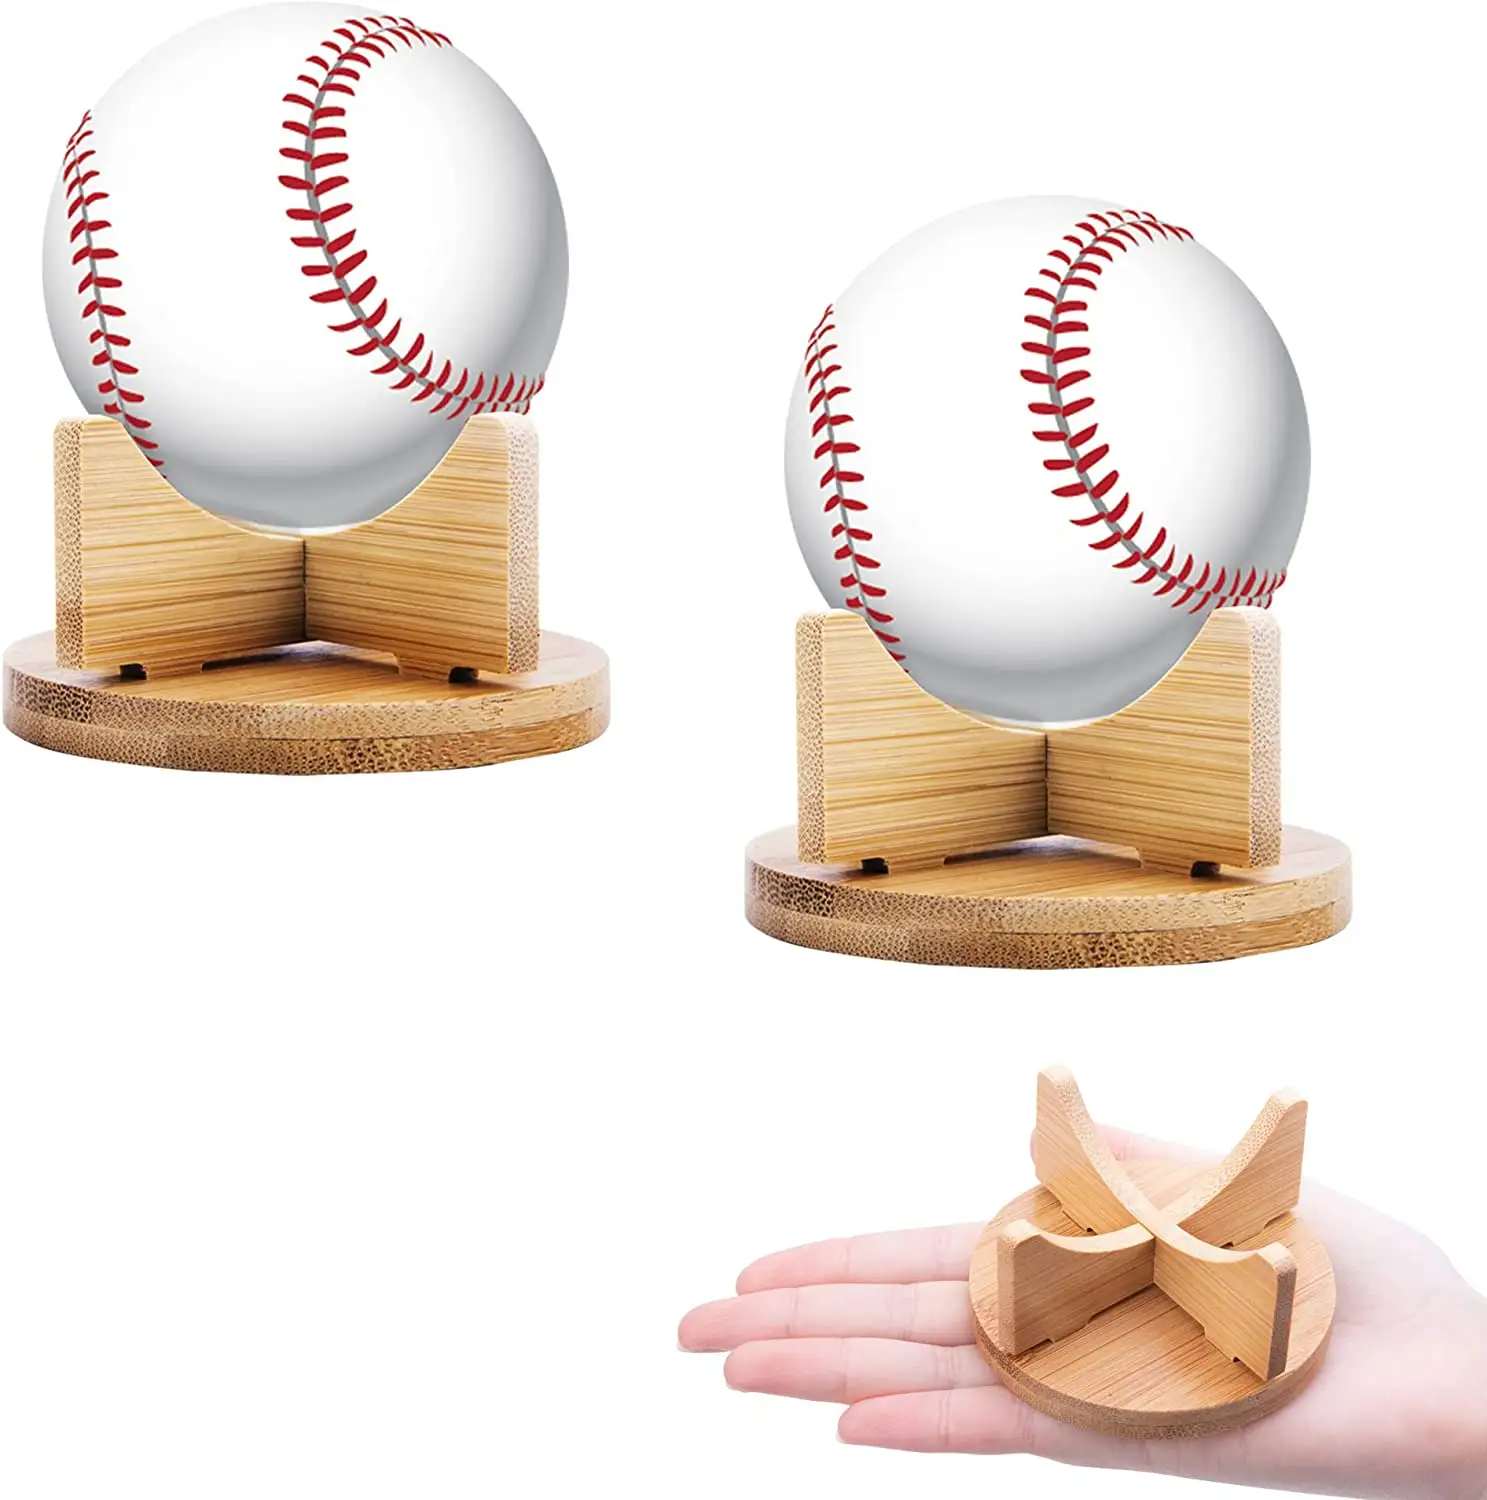 حامل عرض بيسبول من الخيزران الطبيعي ، أنبوب حامل بيسبول لرف تخزين البيسبول بالحجم الرسمي